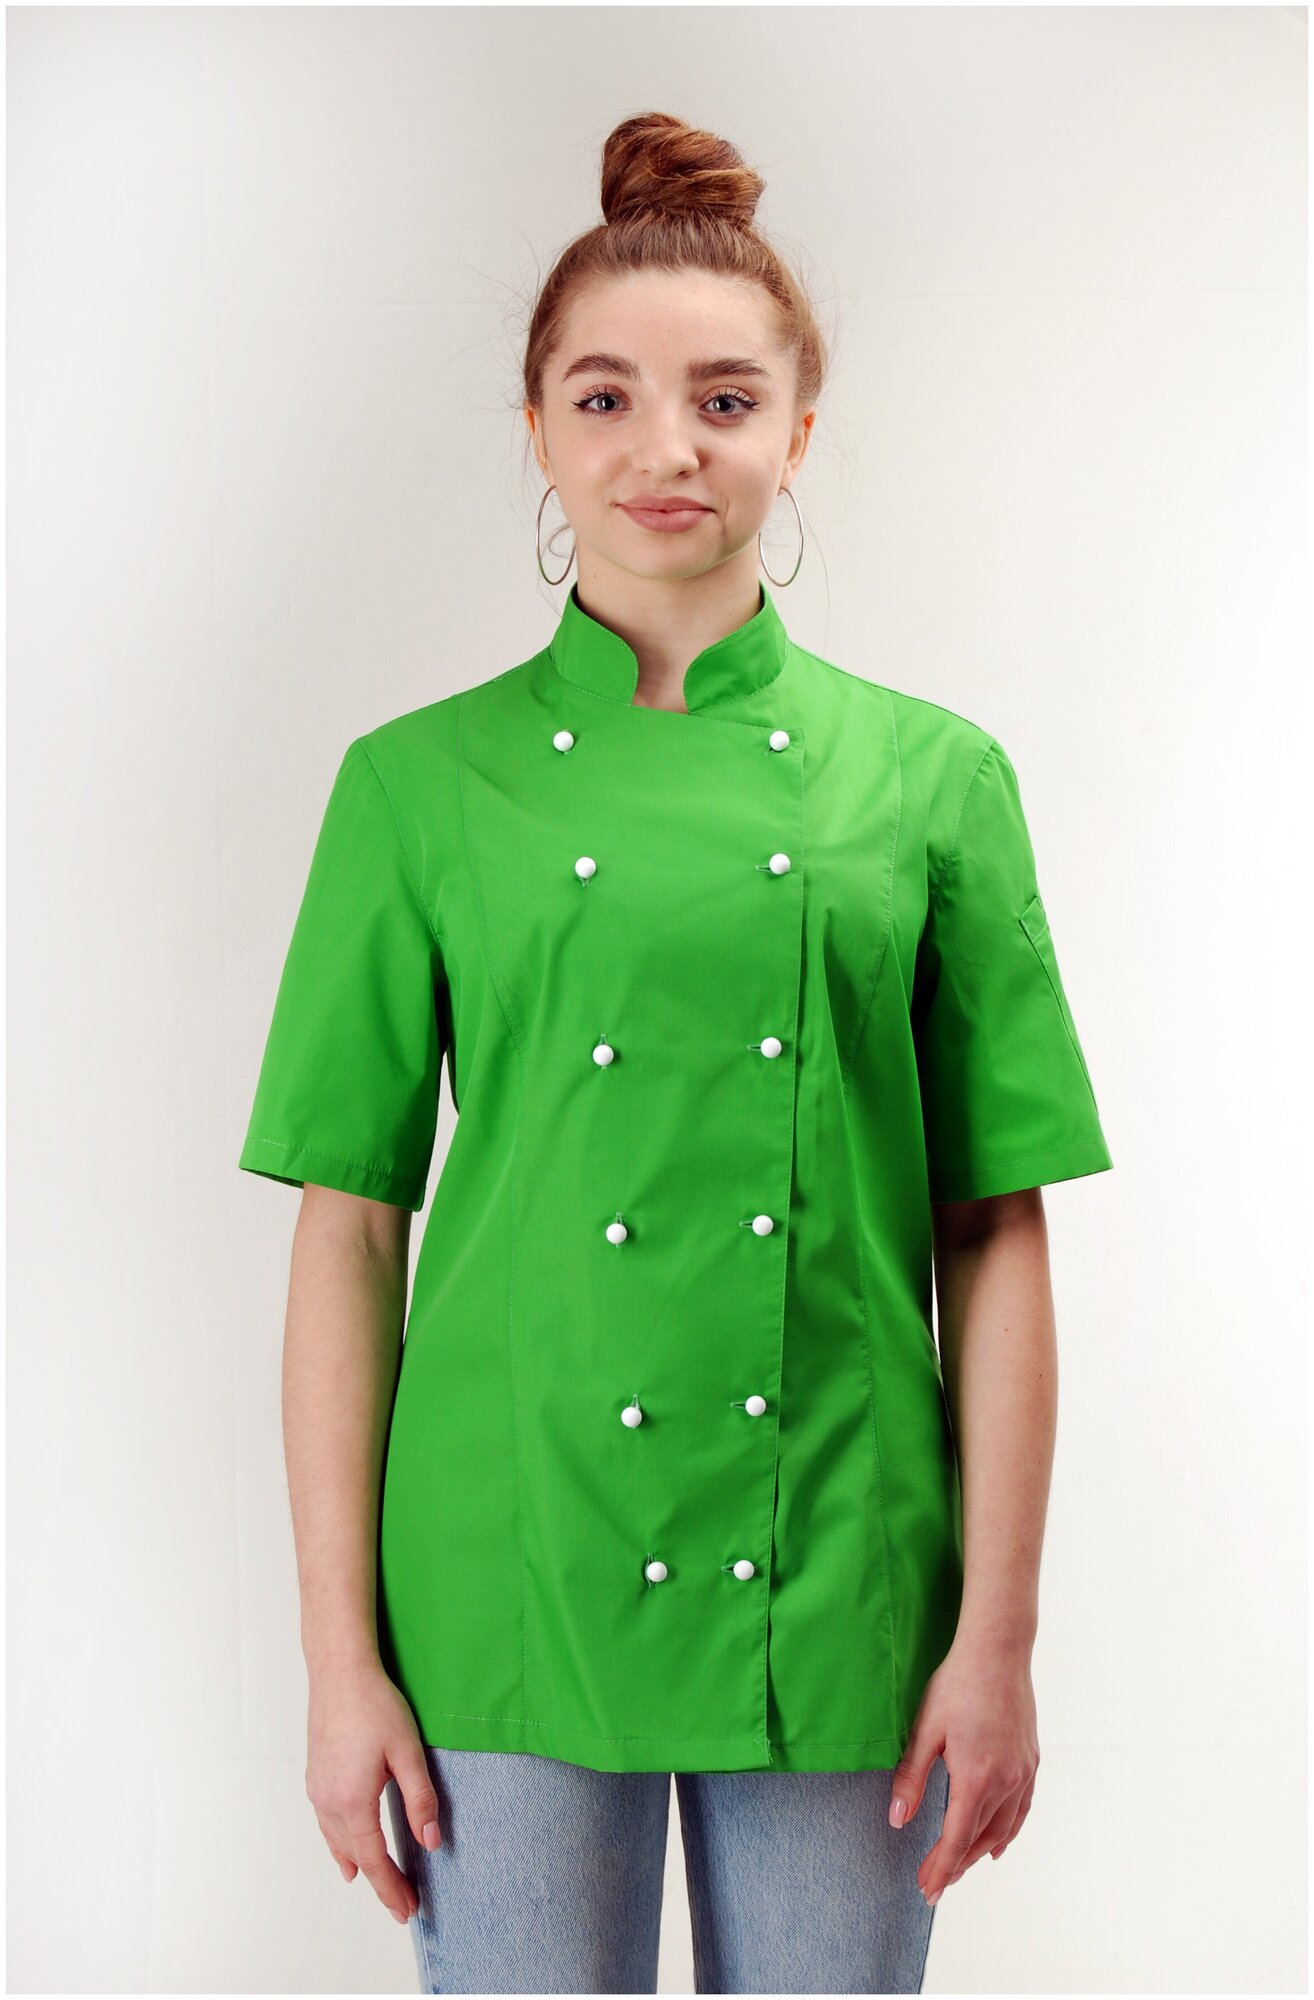 Китель женский SOFIA, Kupifartuk/китель поварской/куртка повара/рубашка рабочая/униформа поварская, зеленый, 46